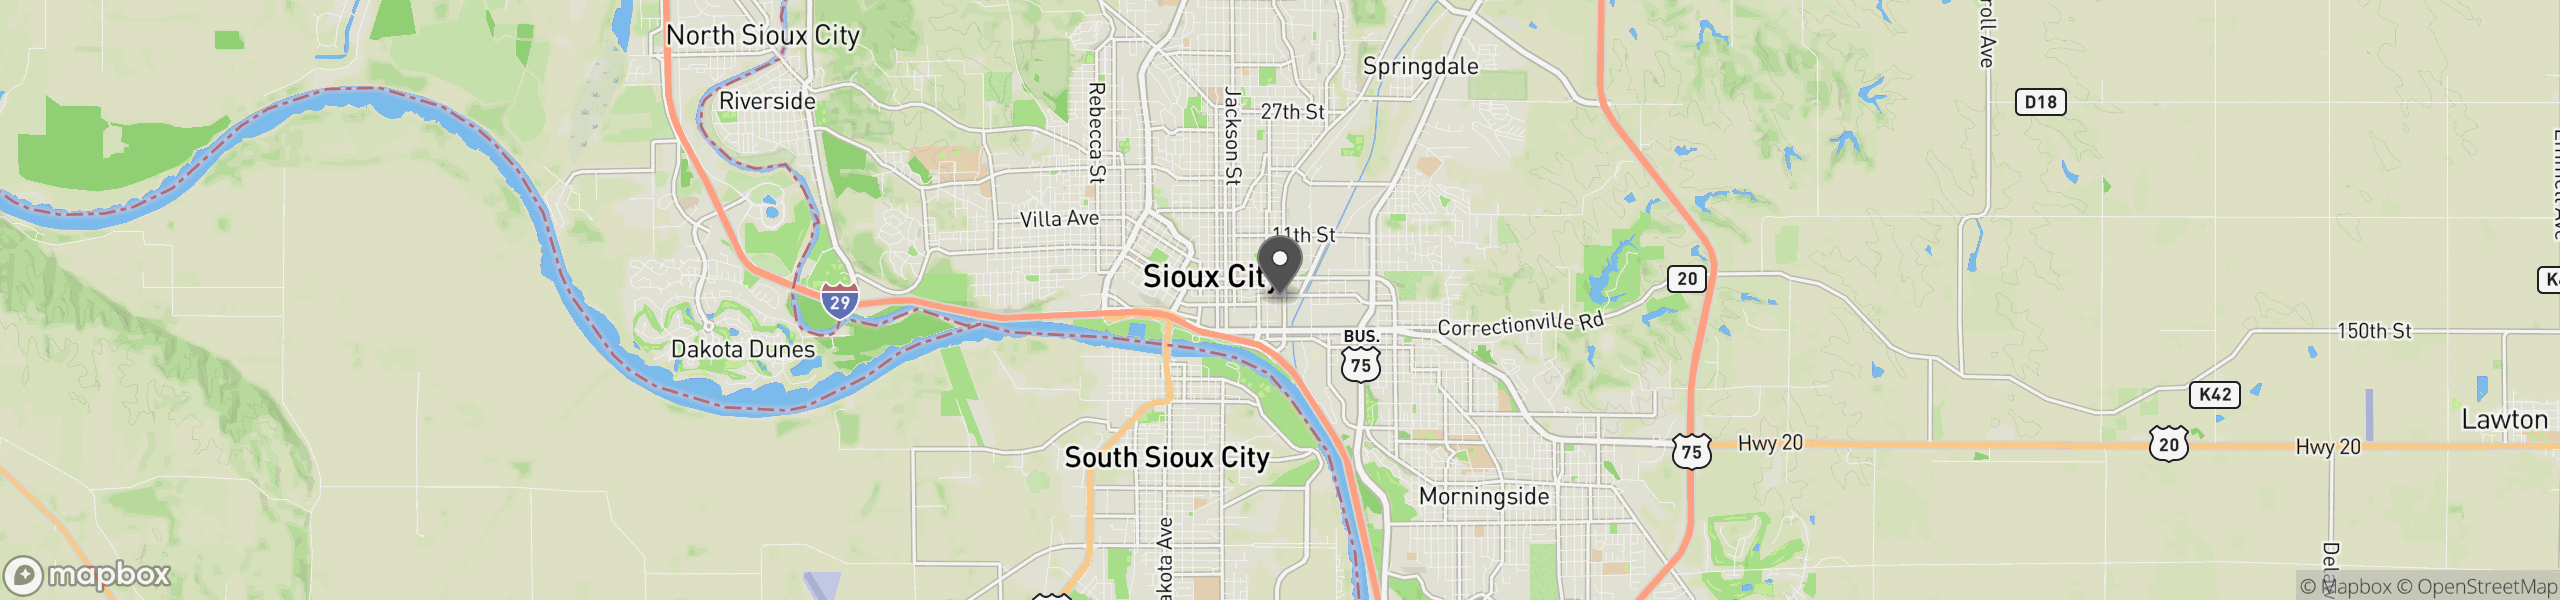 Sioux City, IA 51101